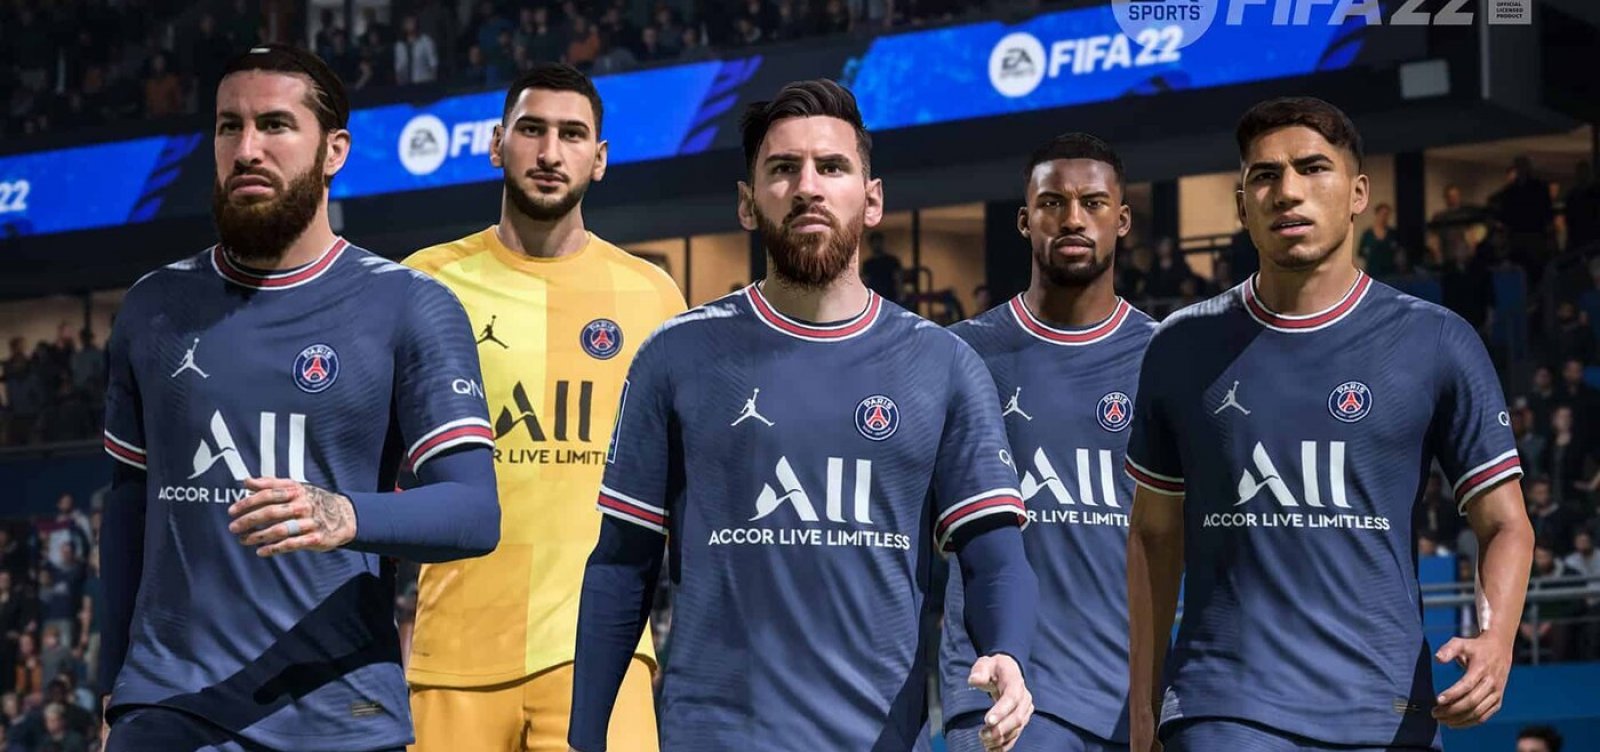 Sem acordo, Fifa retira autorização e EA Sport vai mudar nome de jogo após 30 anos